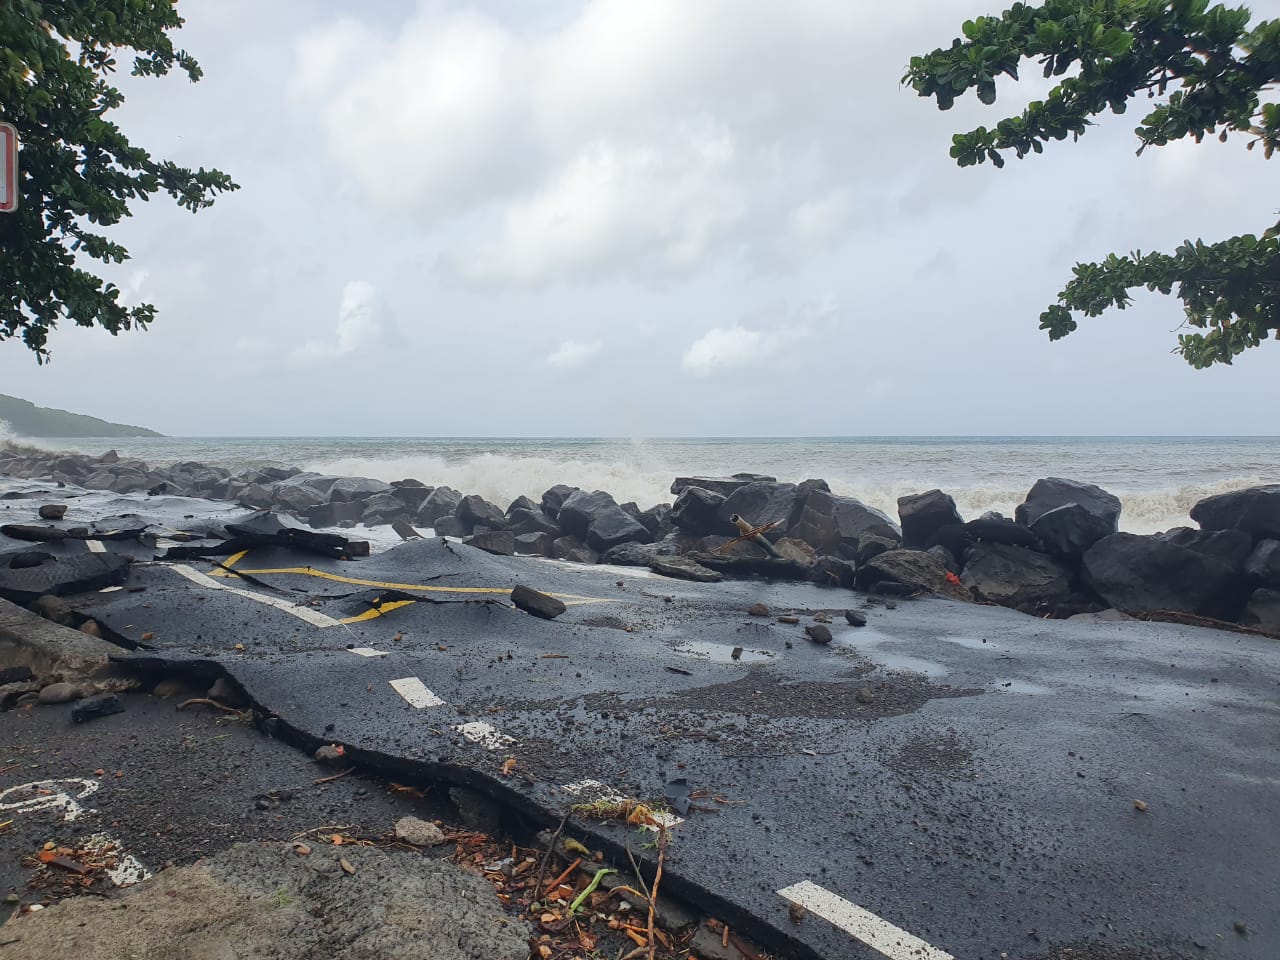     Le point à la mi-journée sur les conséquences de l’ouragan Béryl en Guadeloupe

